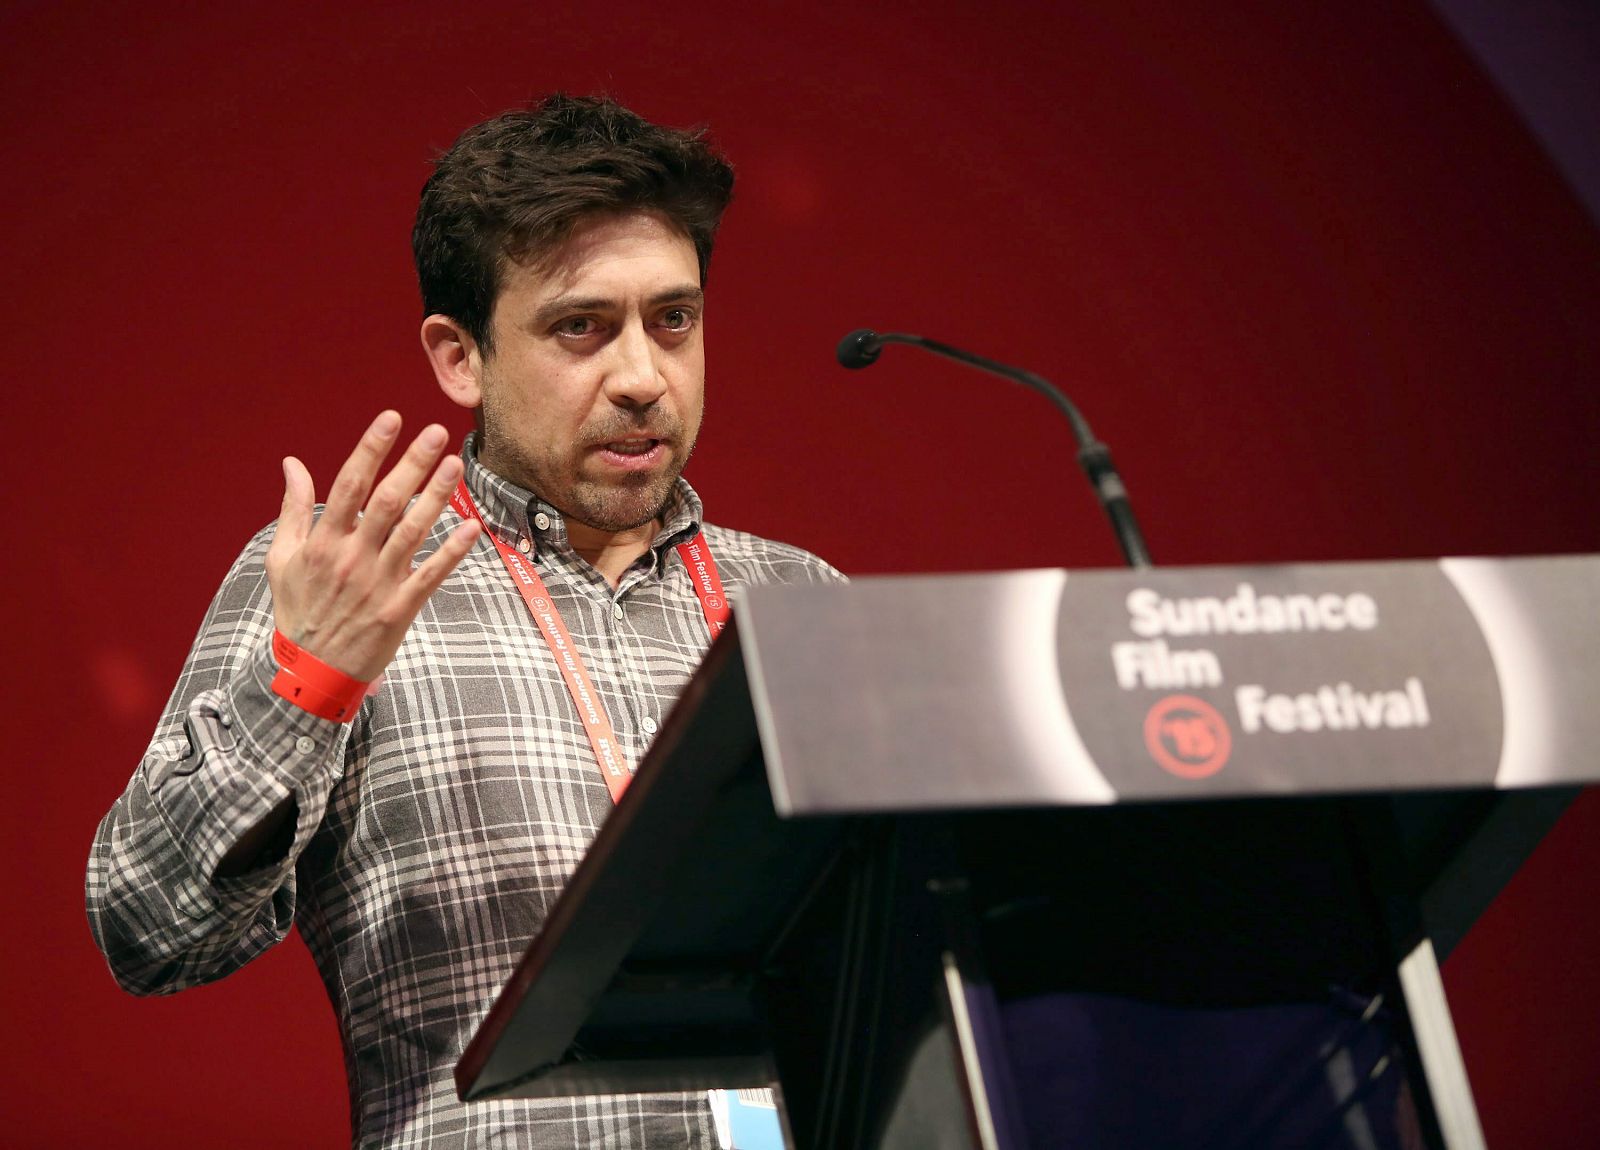 El cineasta Alfonso Gómez-Rejón recoge el premio para 'Me and earl and the Dying Girl' en el Festival de Sundance